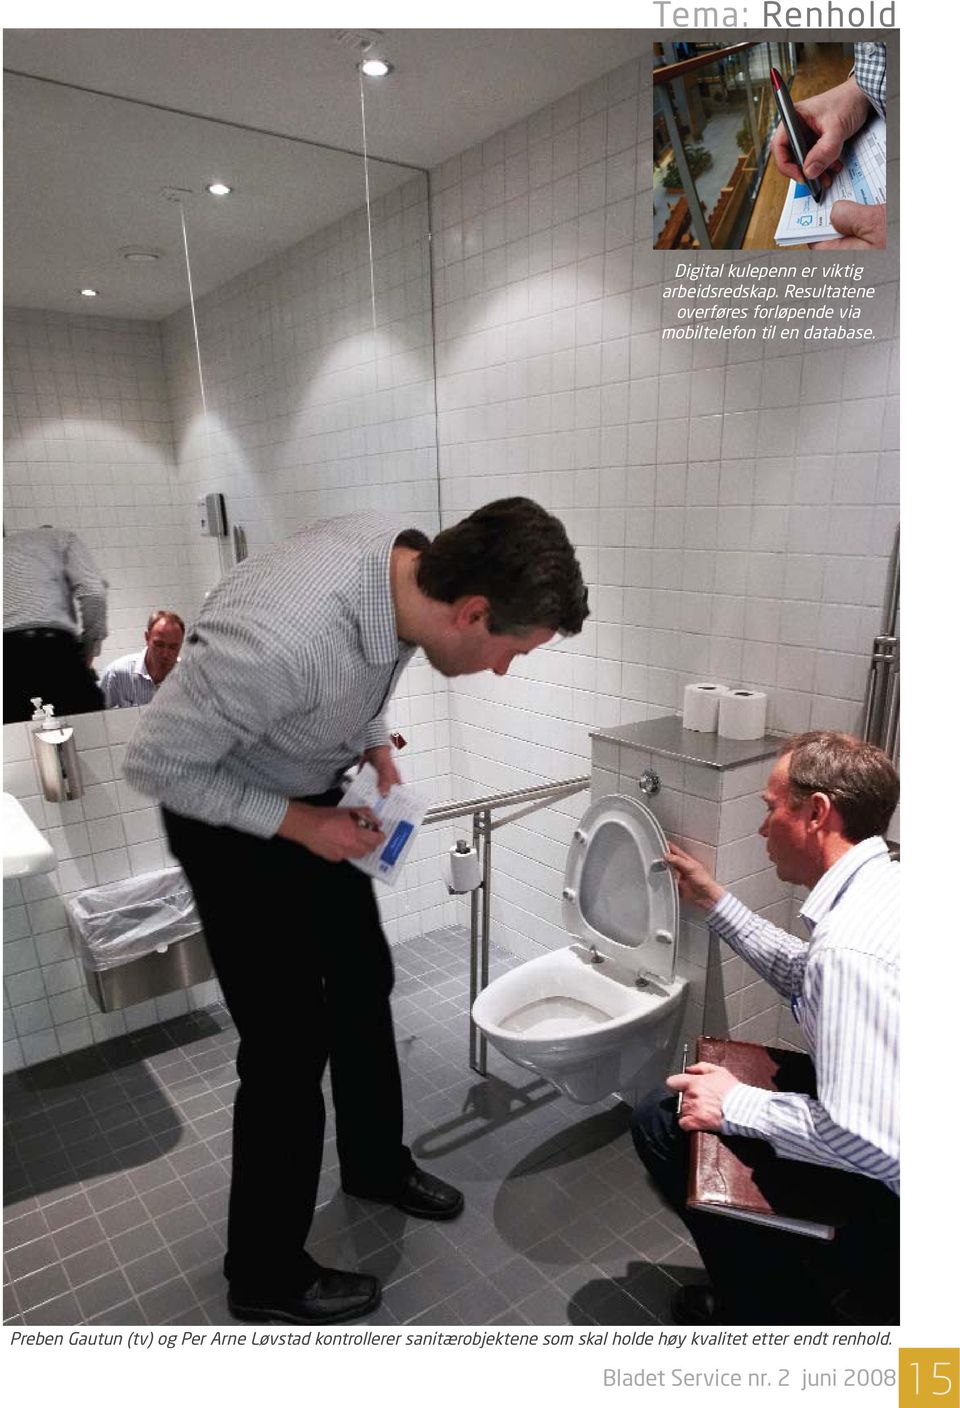 Preben Gautun (tv) og Per Arne Løvstad kontrollerer sanitærobjektene